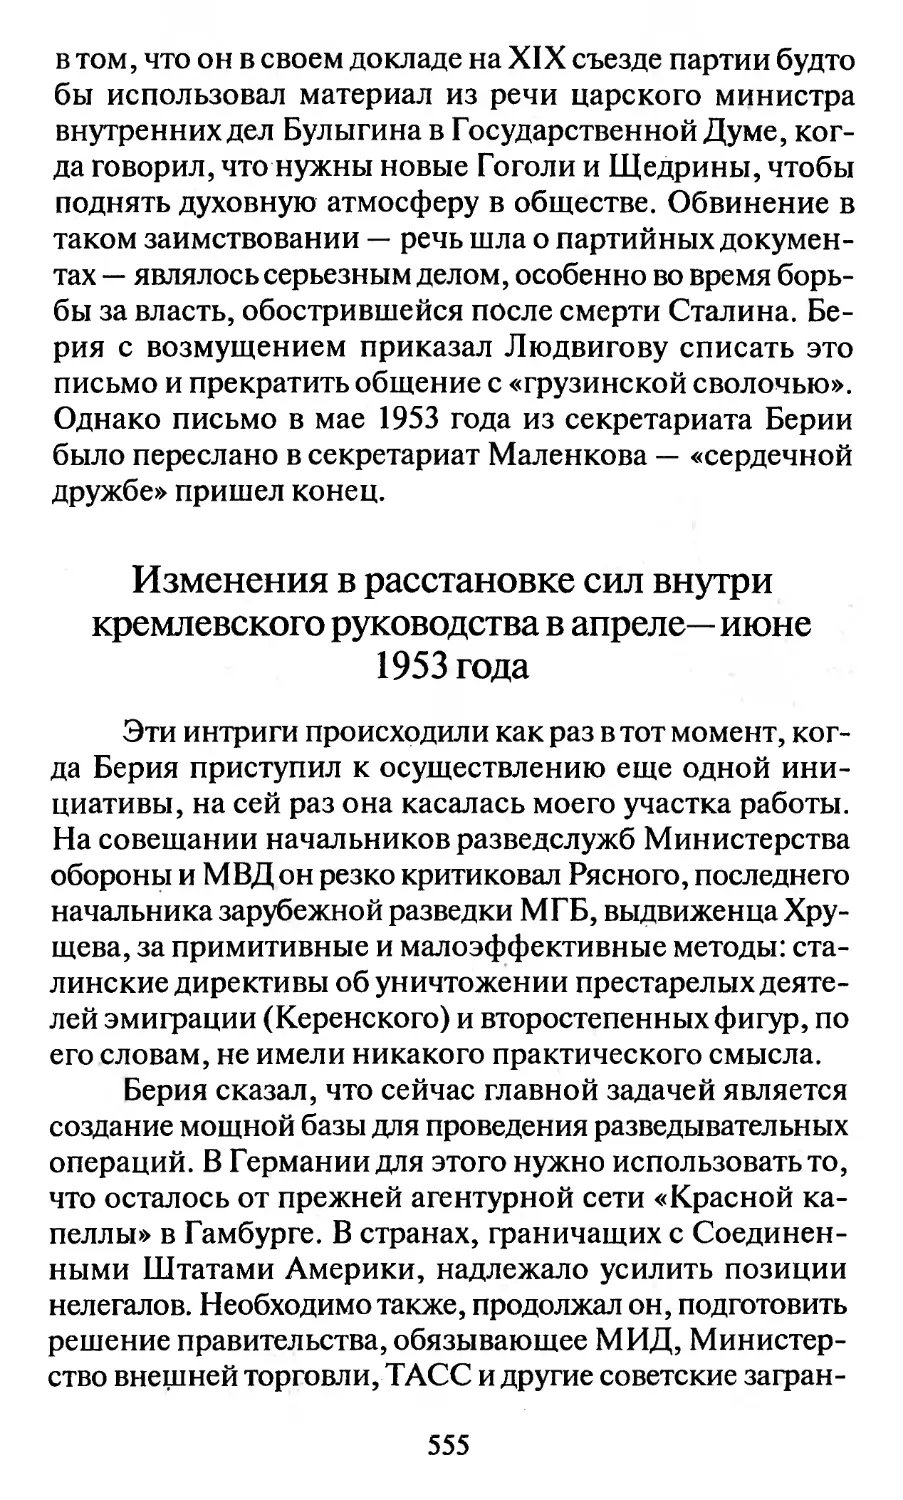 Изменения в расстановке сил внутри кремлёвского руководства в апреле-июне 1953 года